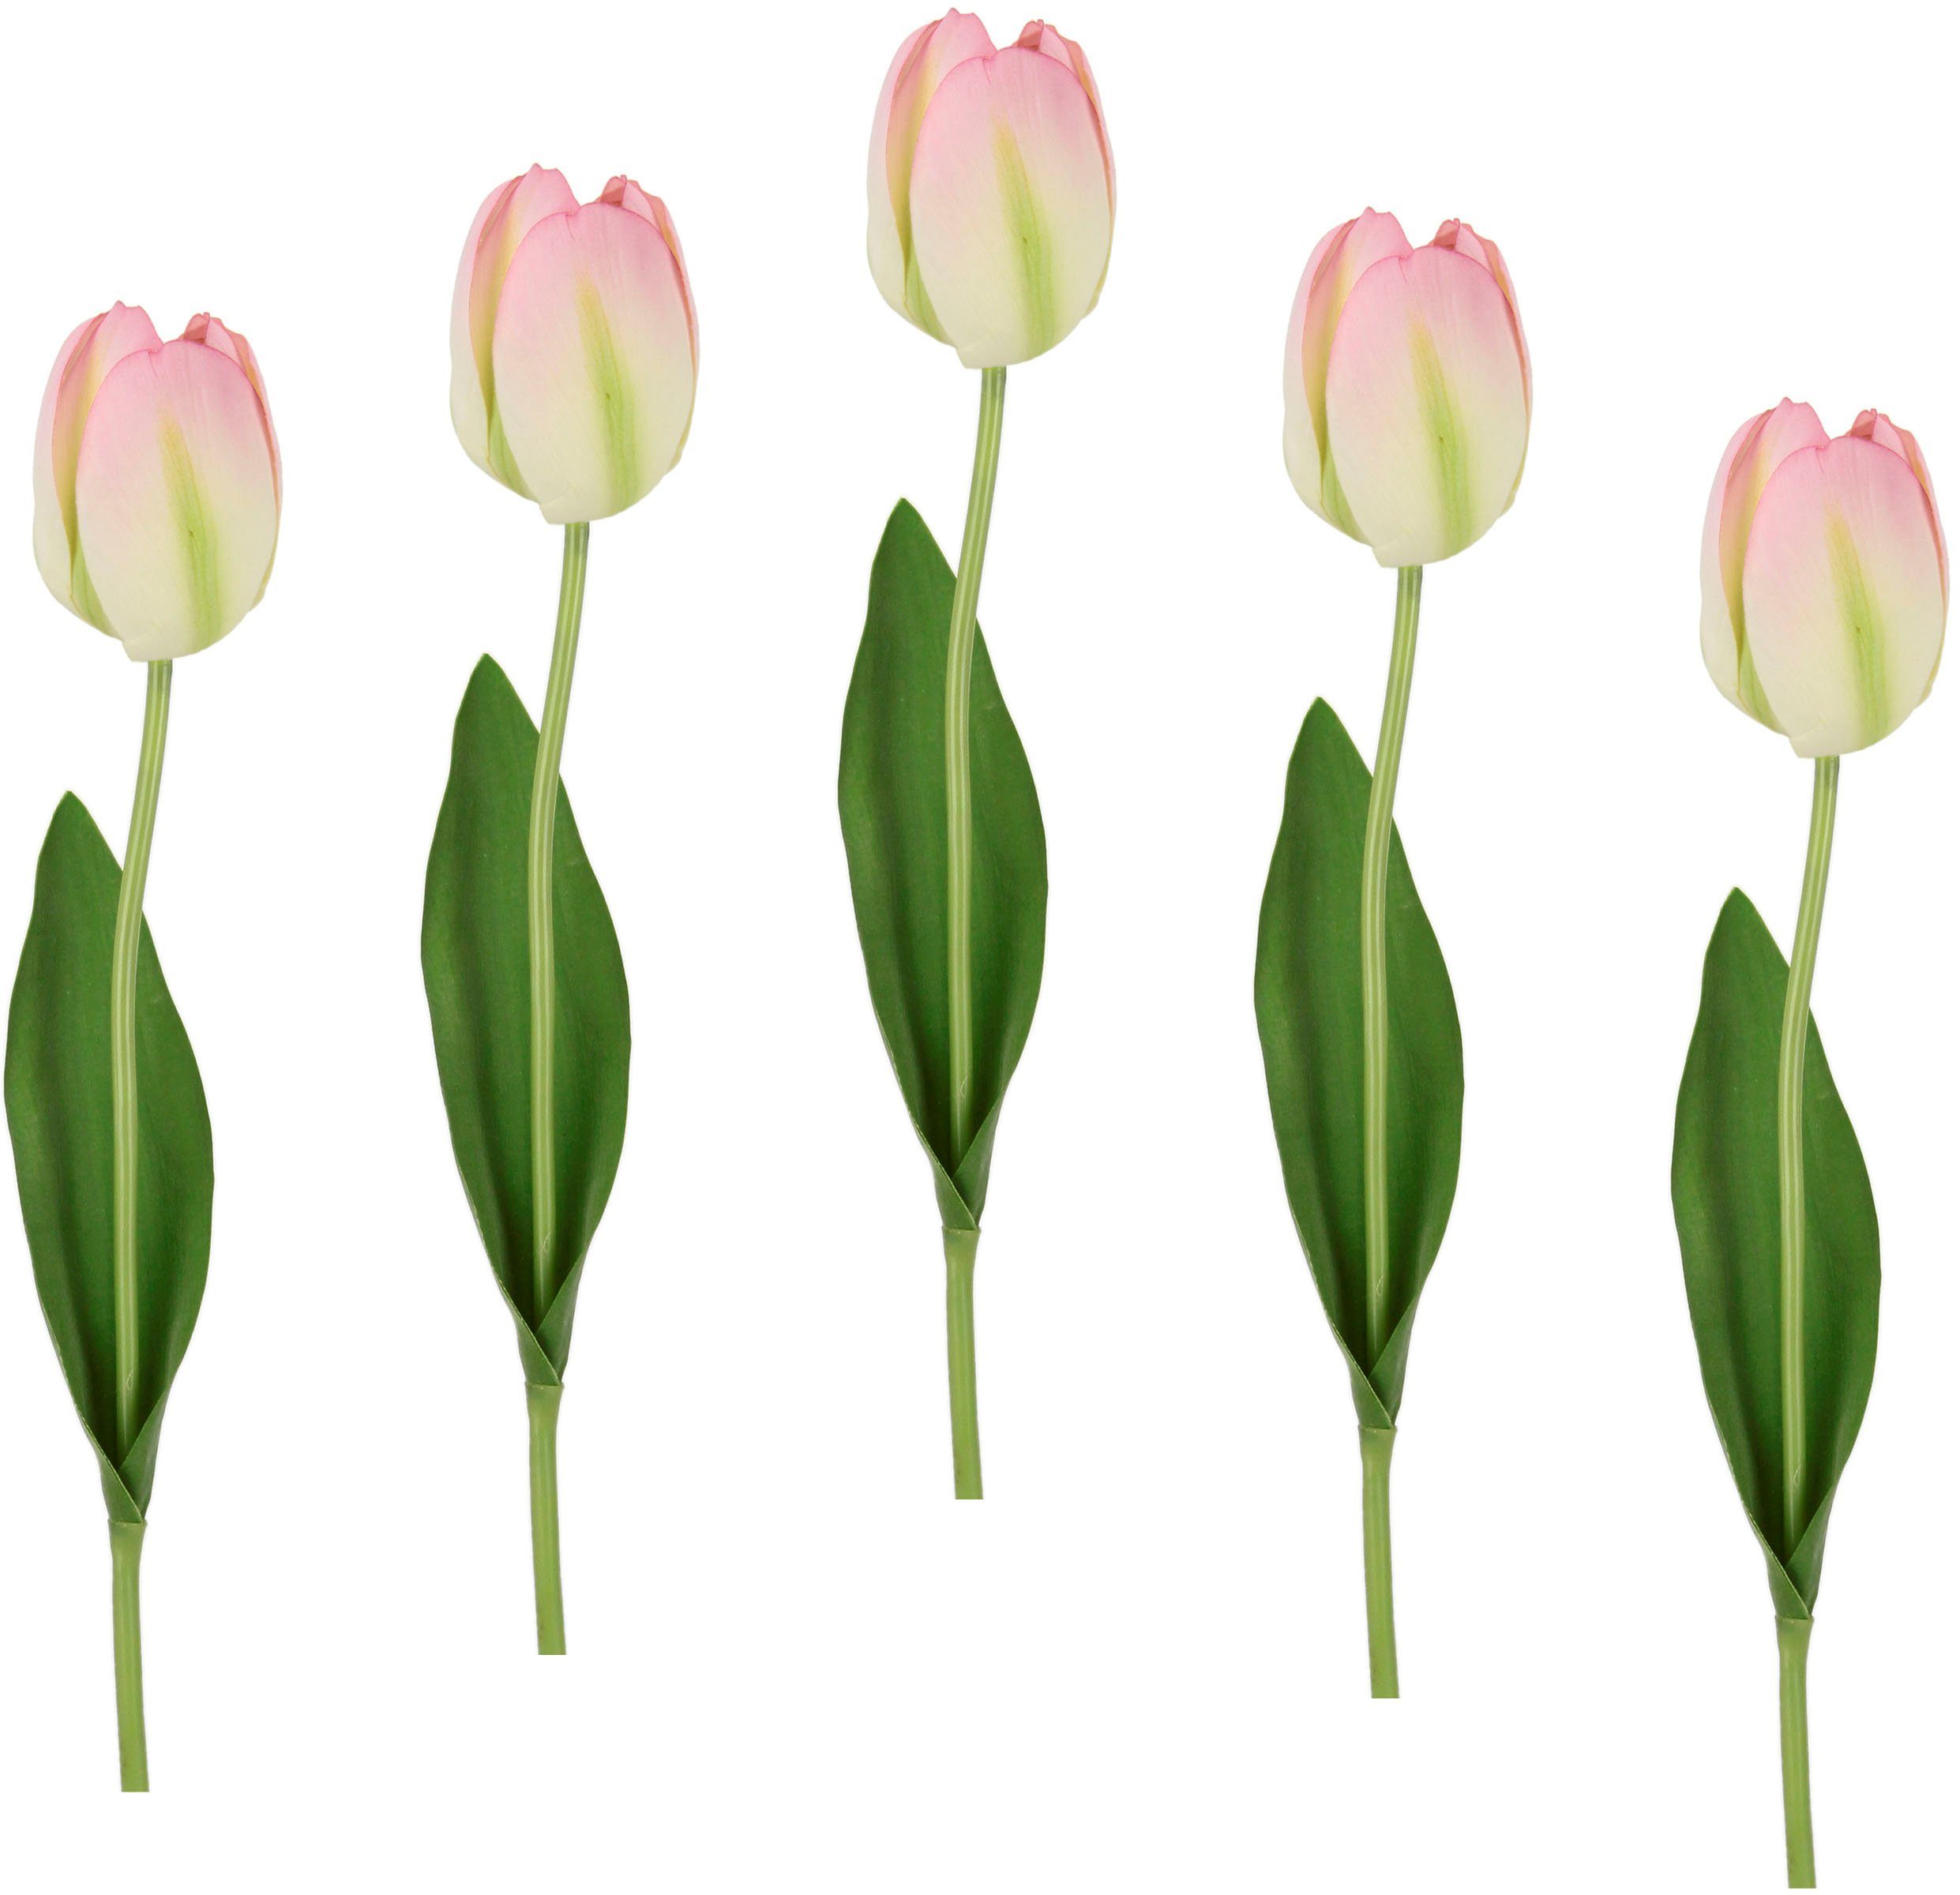 Kunstblume Real Touch Tulpen, I.GE.A., Höhe 67 cm, 5er Set künstliche Tulpenknospen, Kunstblumen, Stielblume weiß/rosa | Kunstblumen